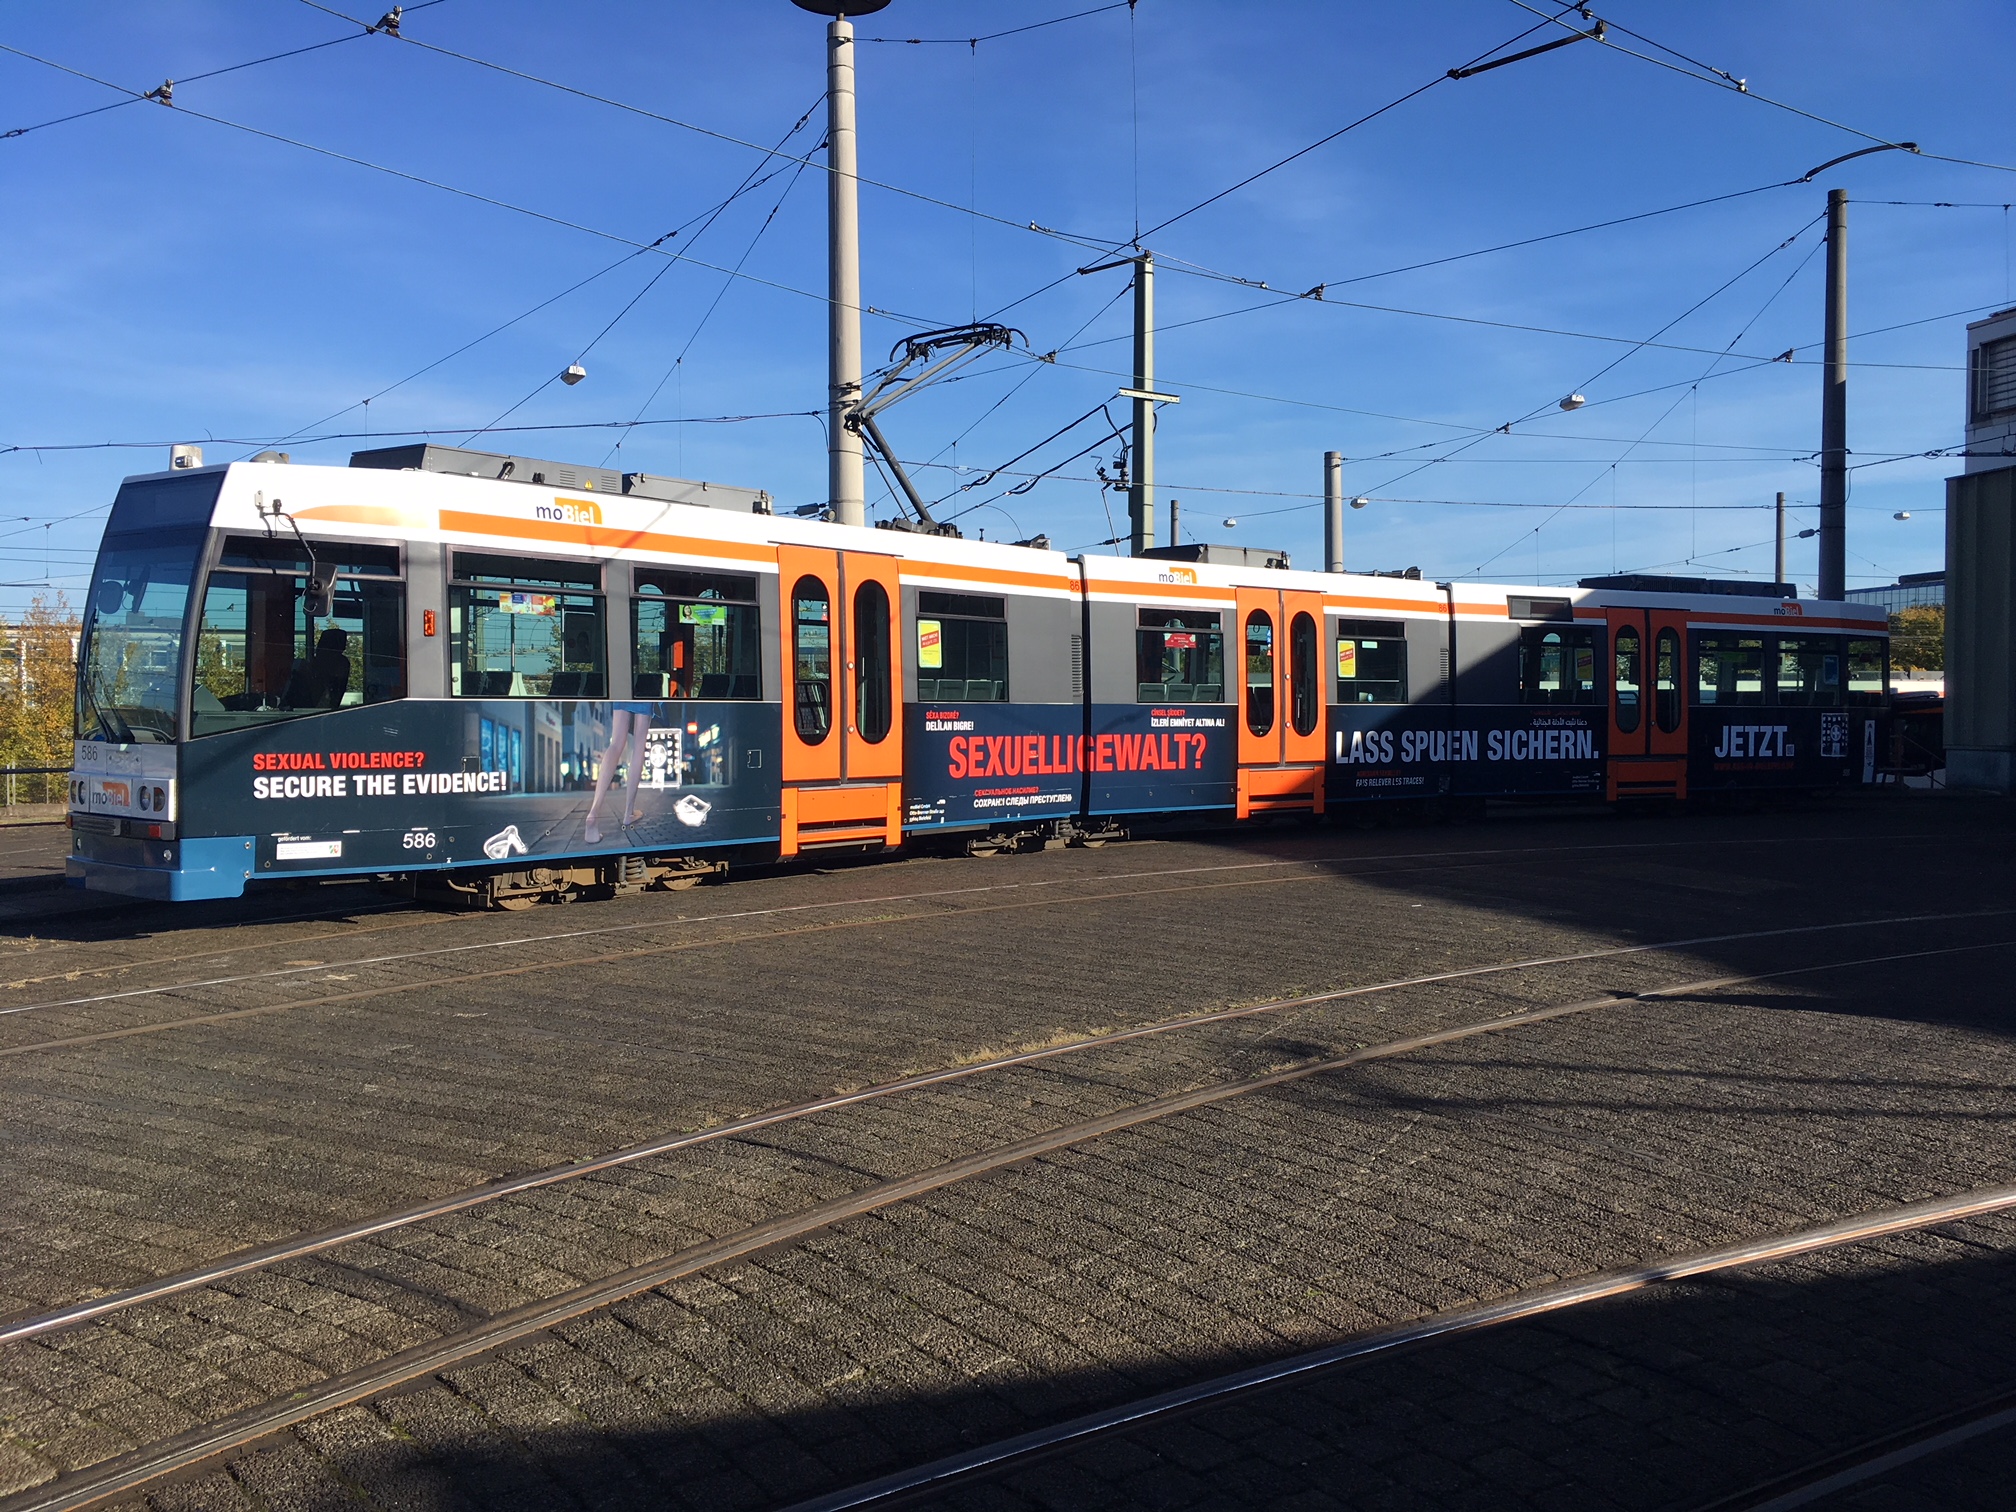 Bielefelder Stadtbahn macht mit ihrem Aufdruck auf das Themas Anzeigenunabhängige Spurensicherung aufmerksam